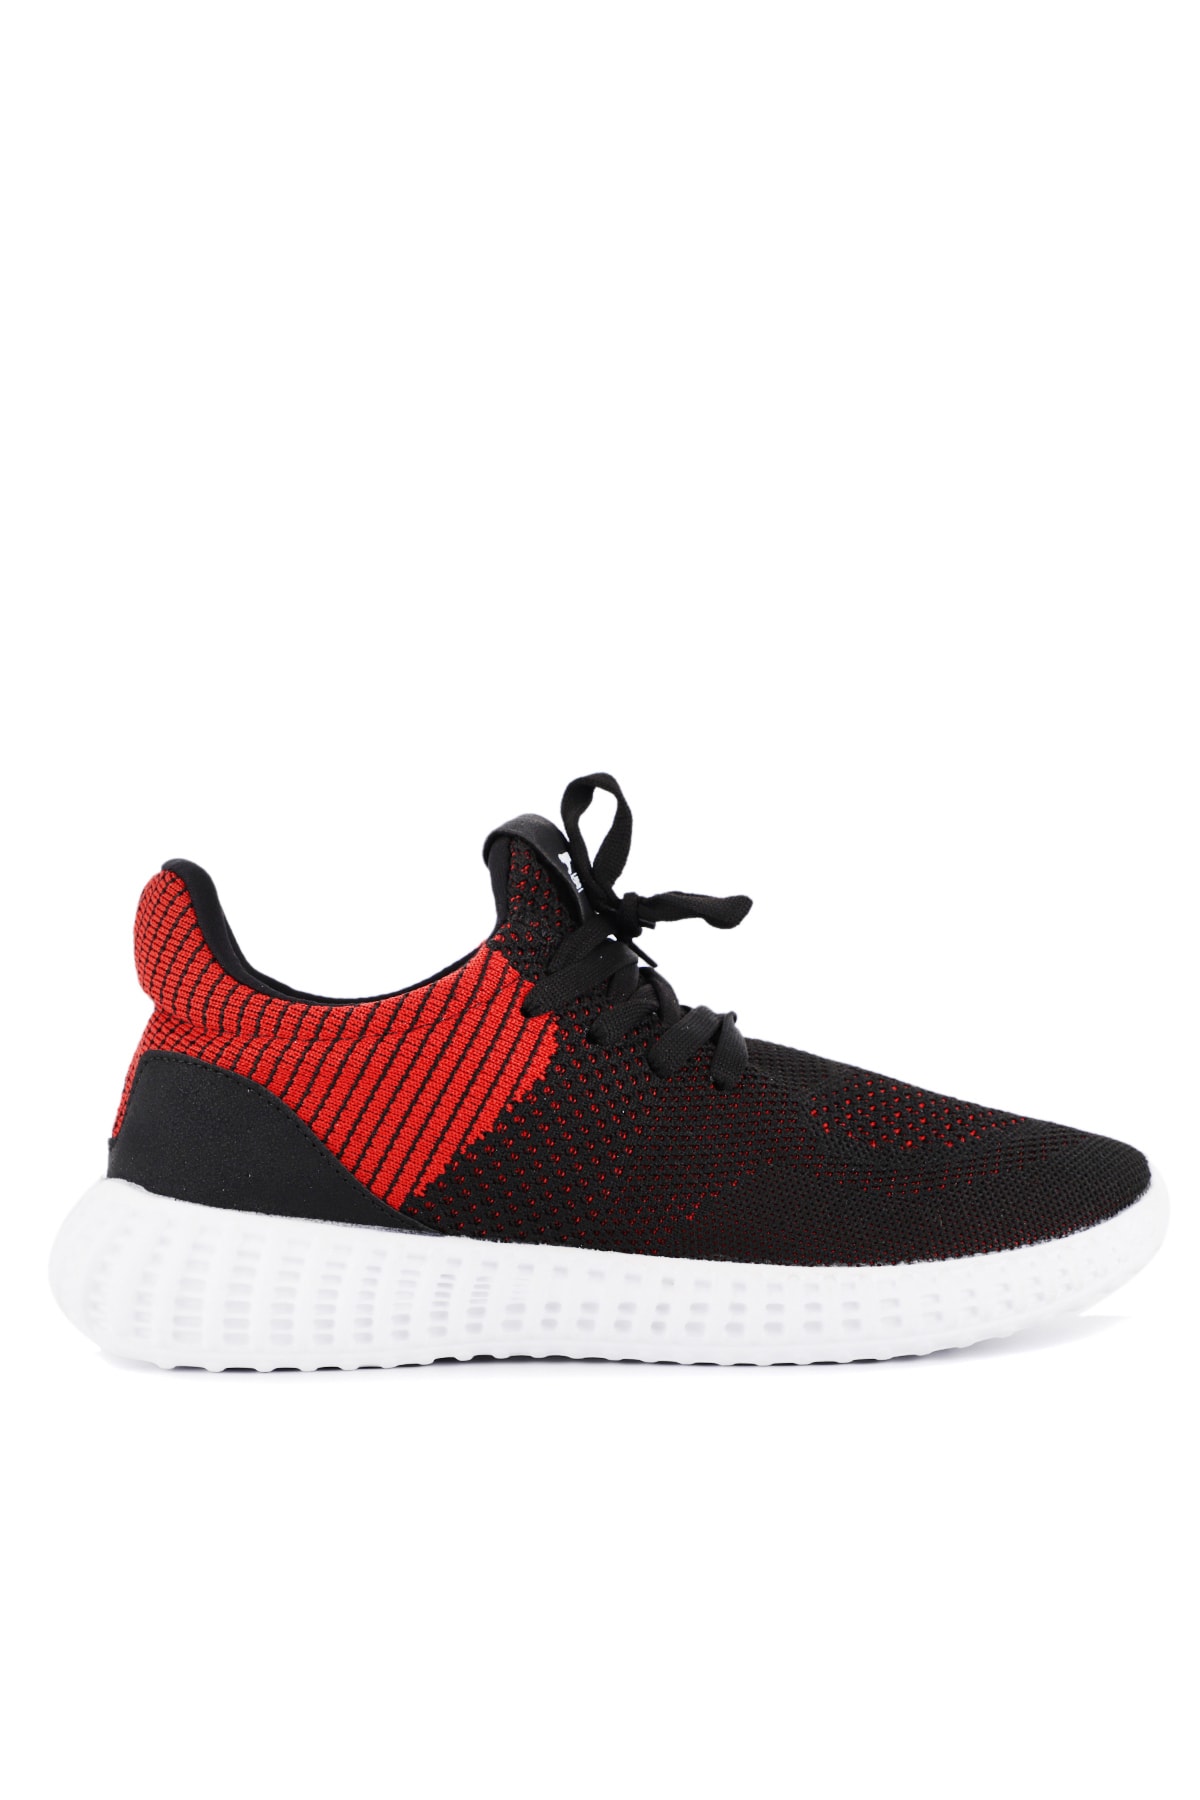 Slazenger Atomic Sneaker Shoes Black / Red